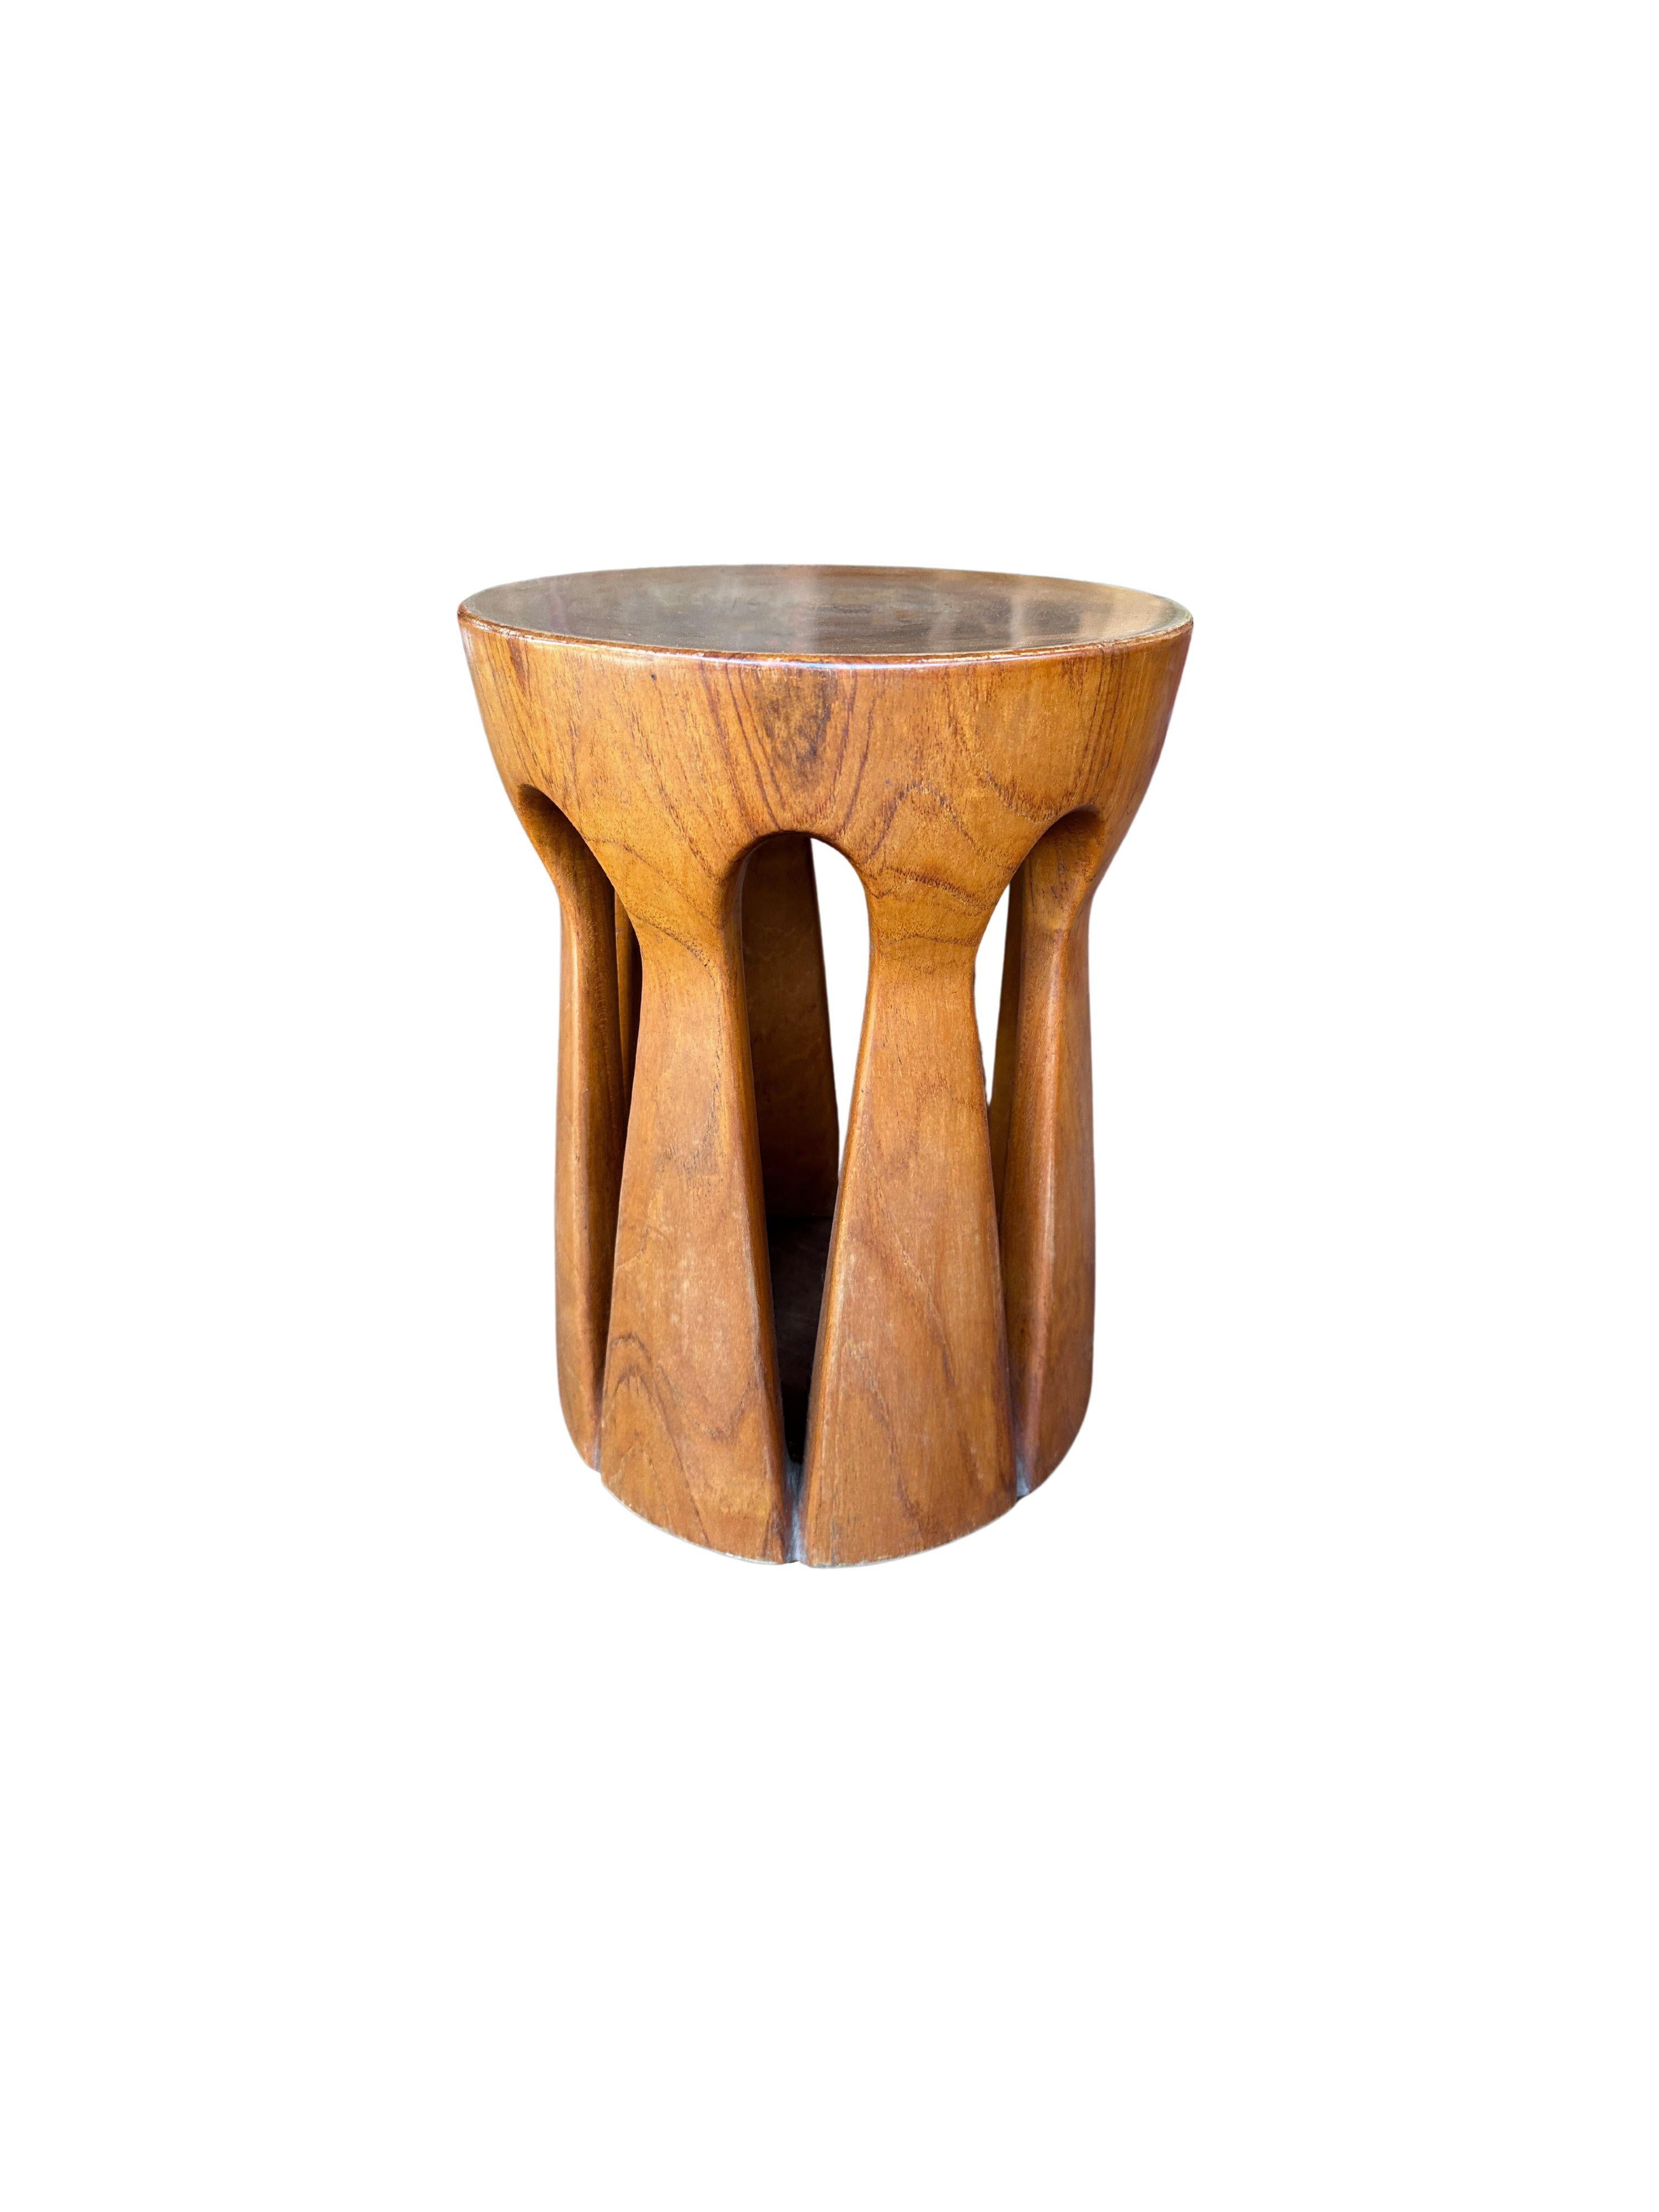 teakwood stool